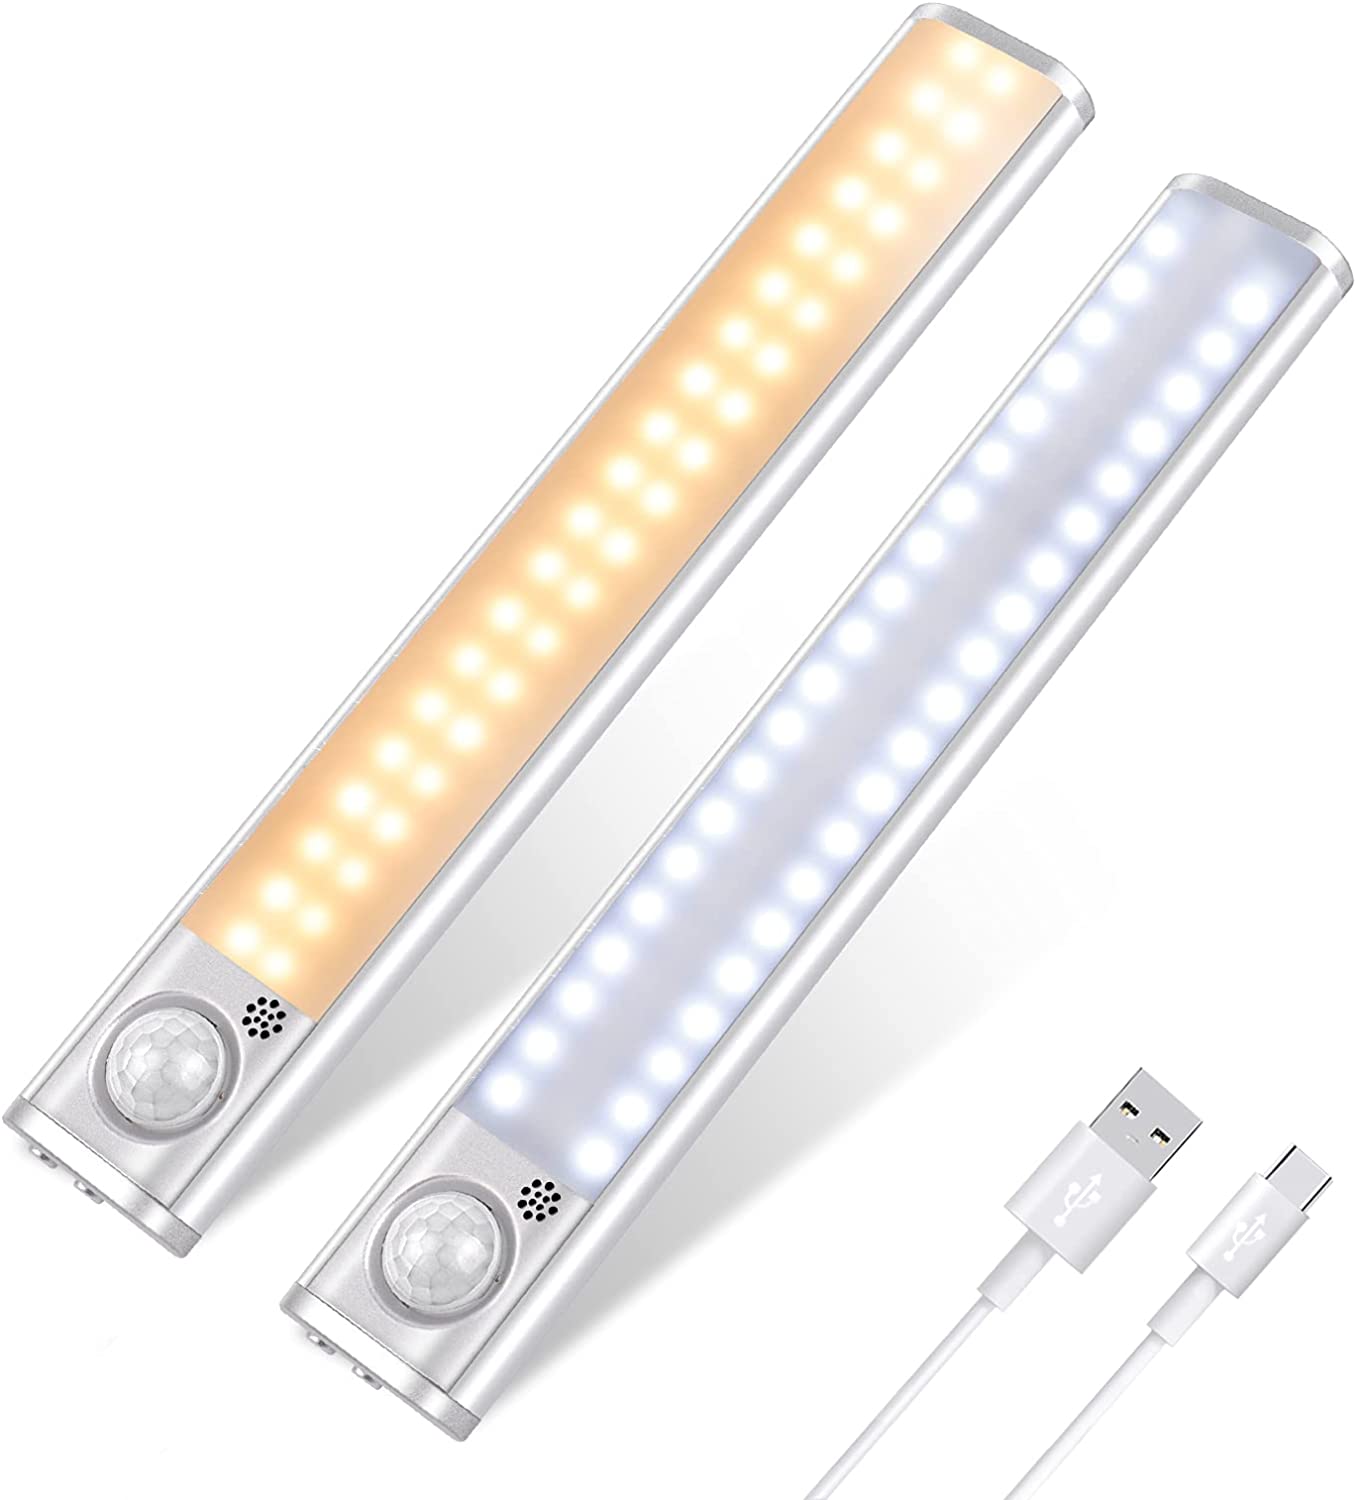 Bild zu Doppelpack LED-Schrankleuchten mit Bewegungssensor für 13,49€